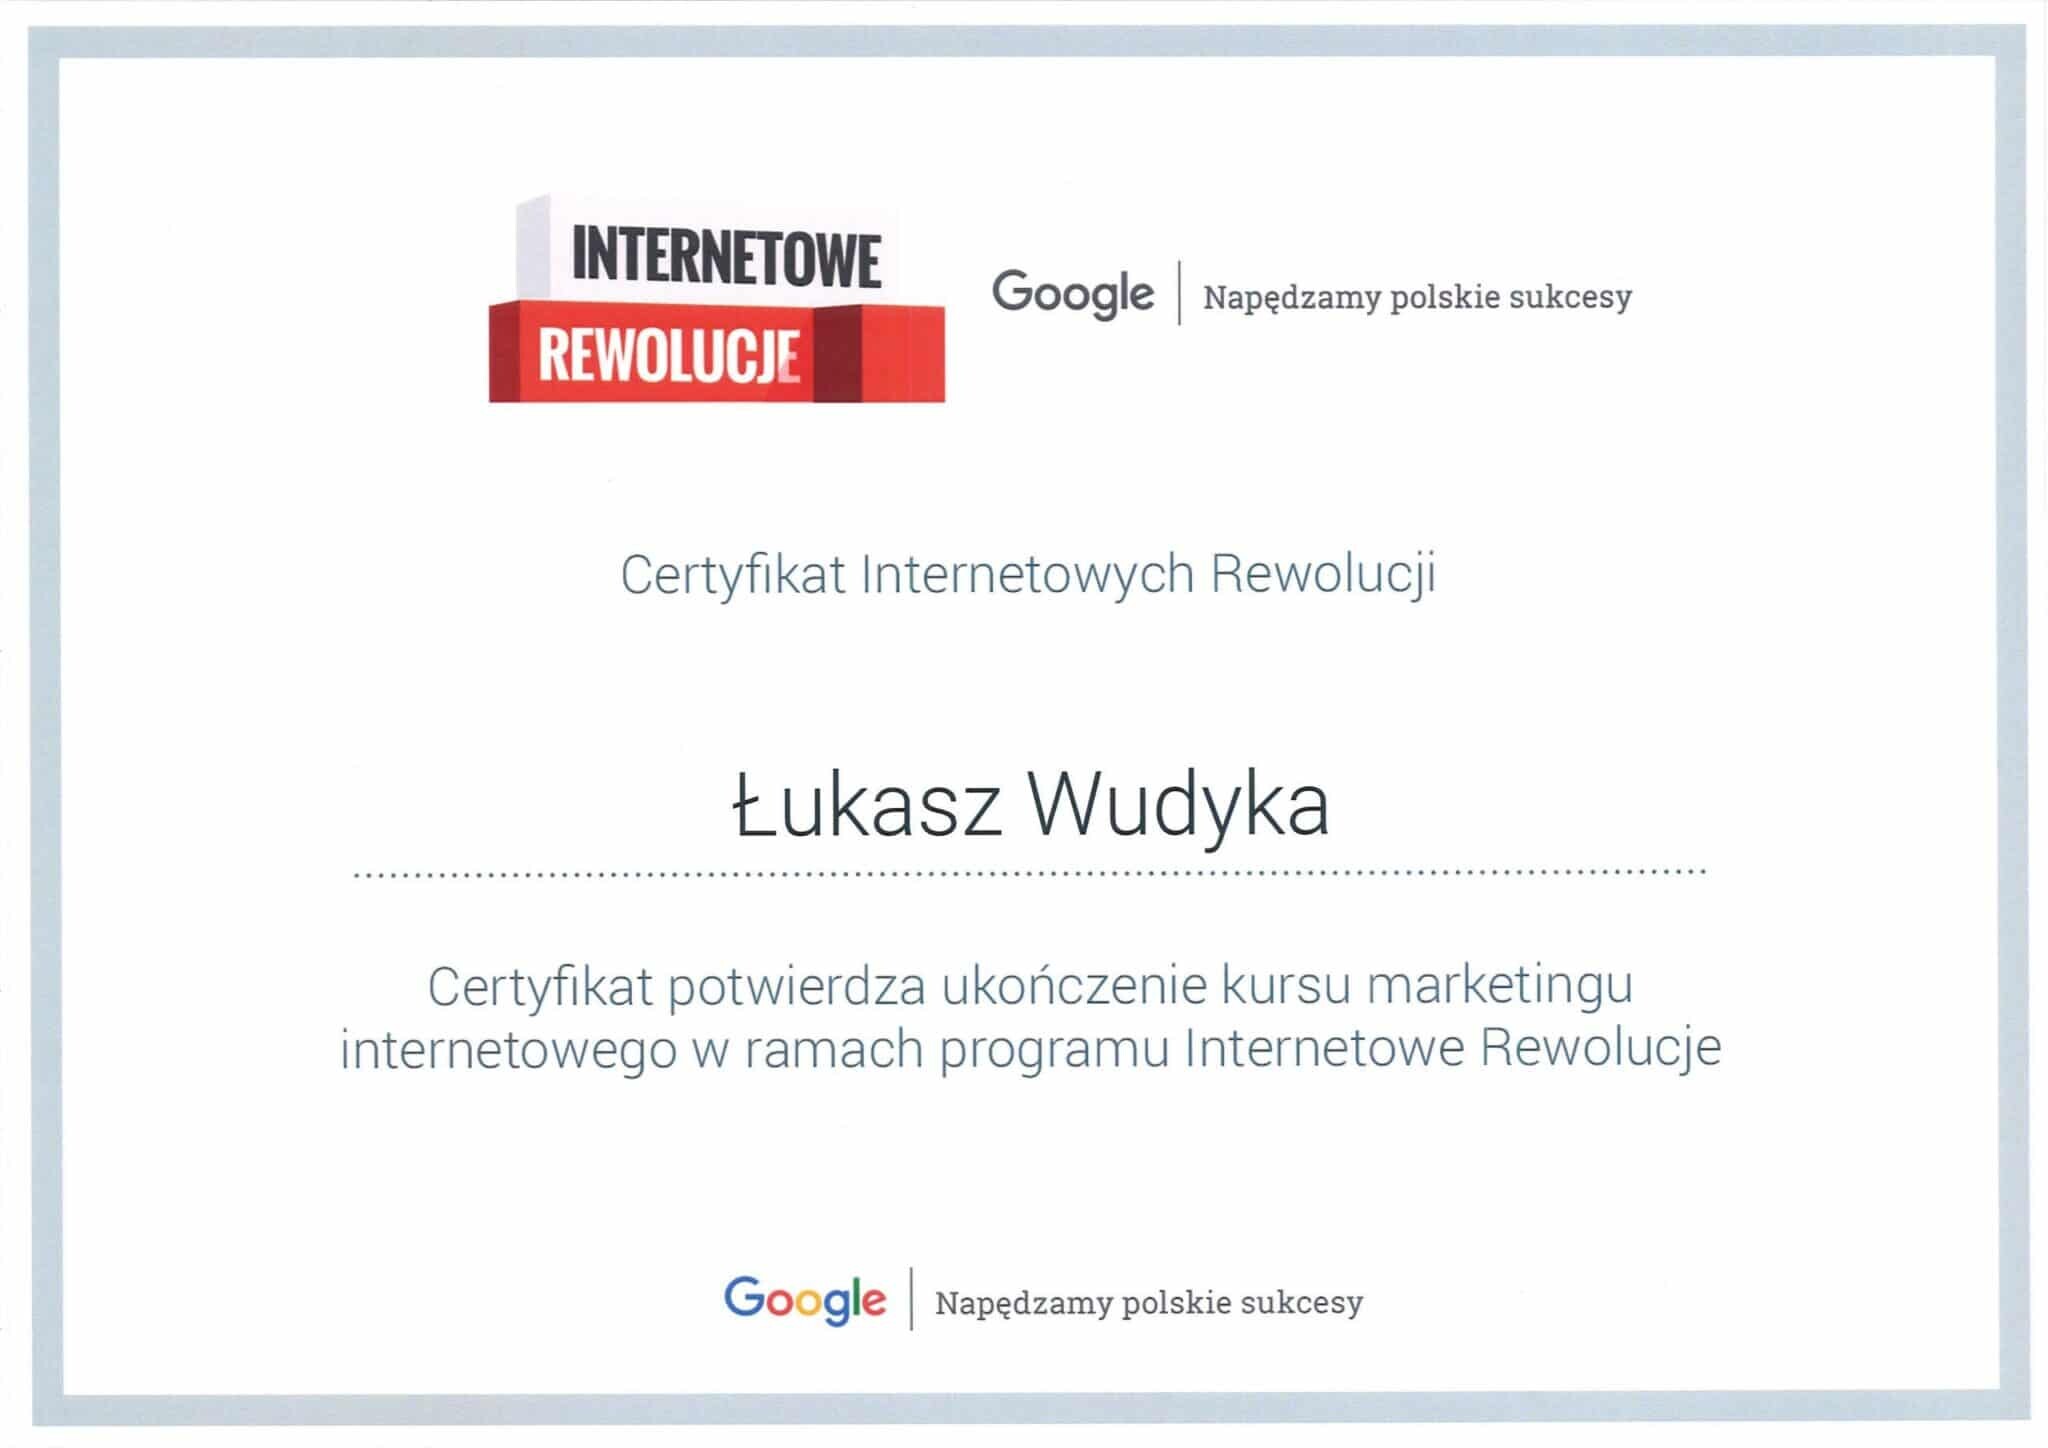 Łukasz Wudyka certyfikat Internetowe Rewolucje